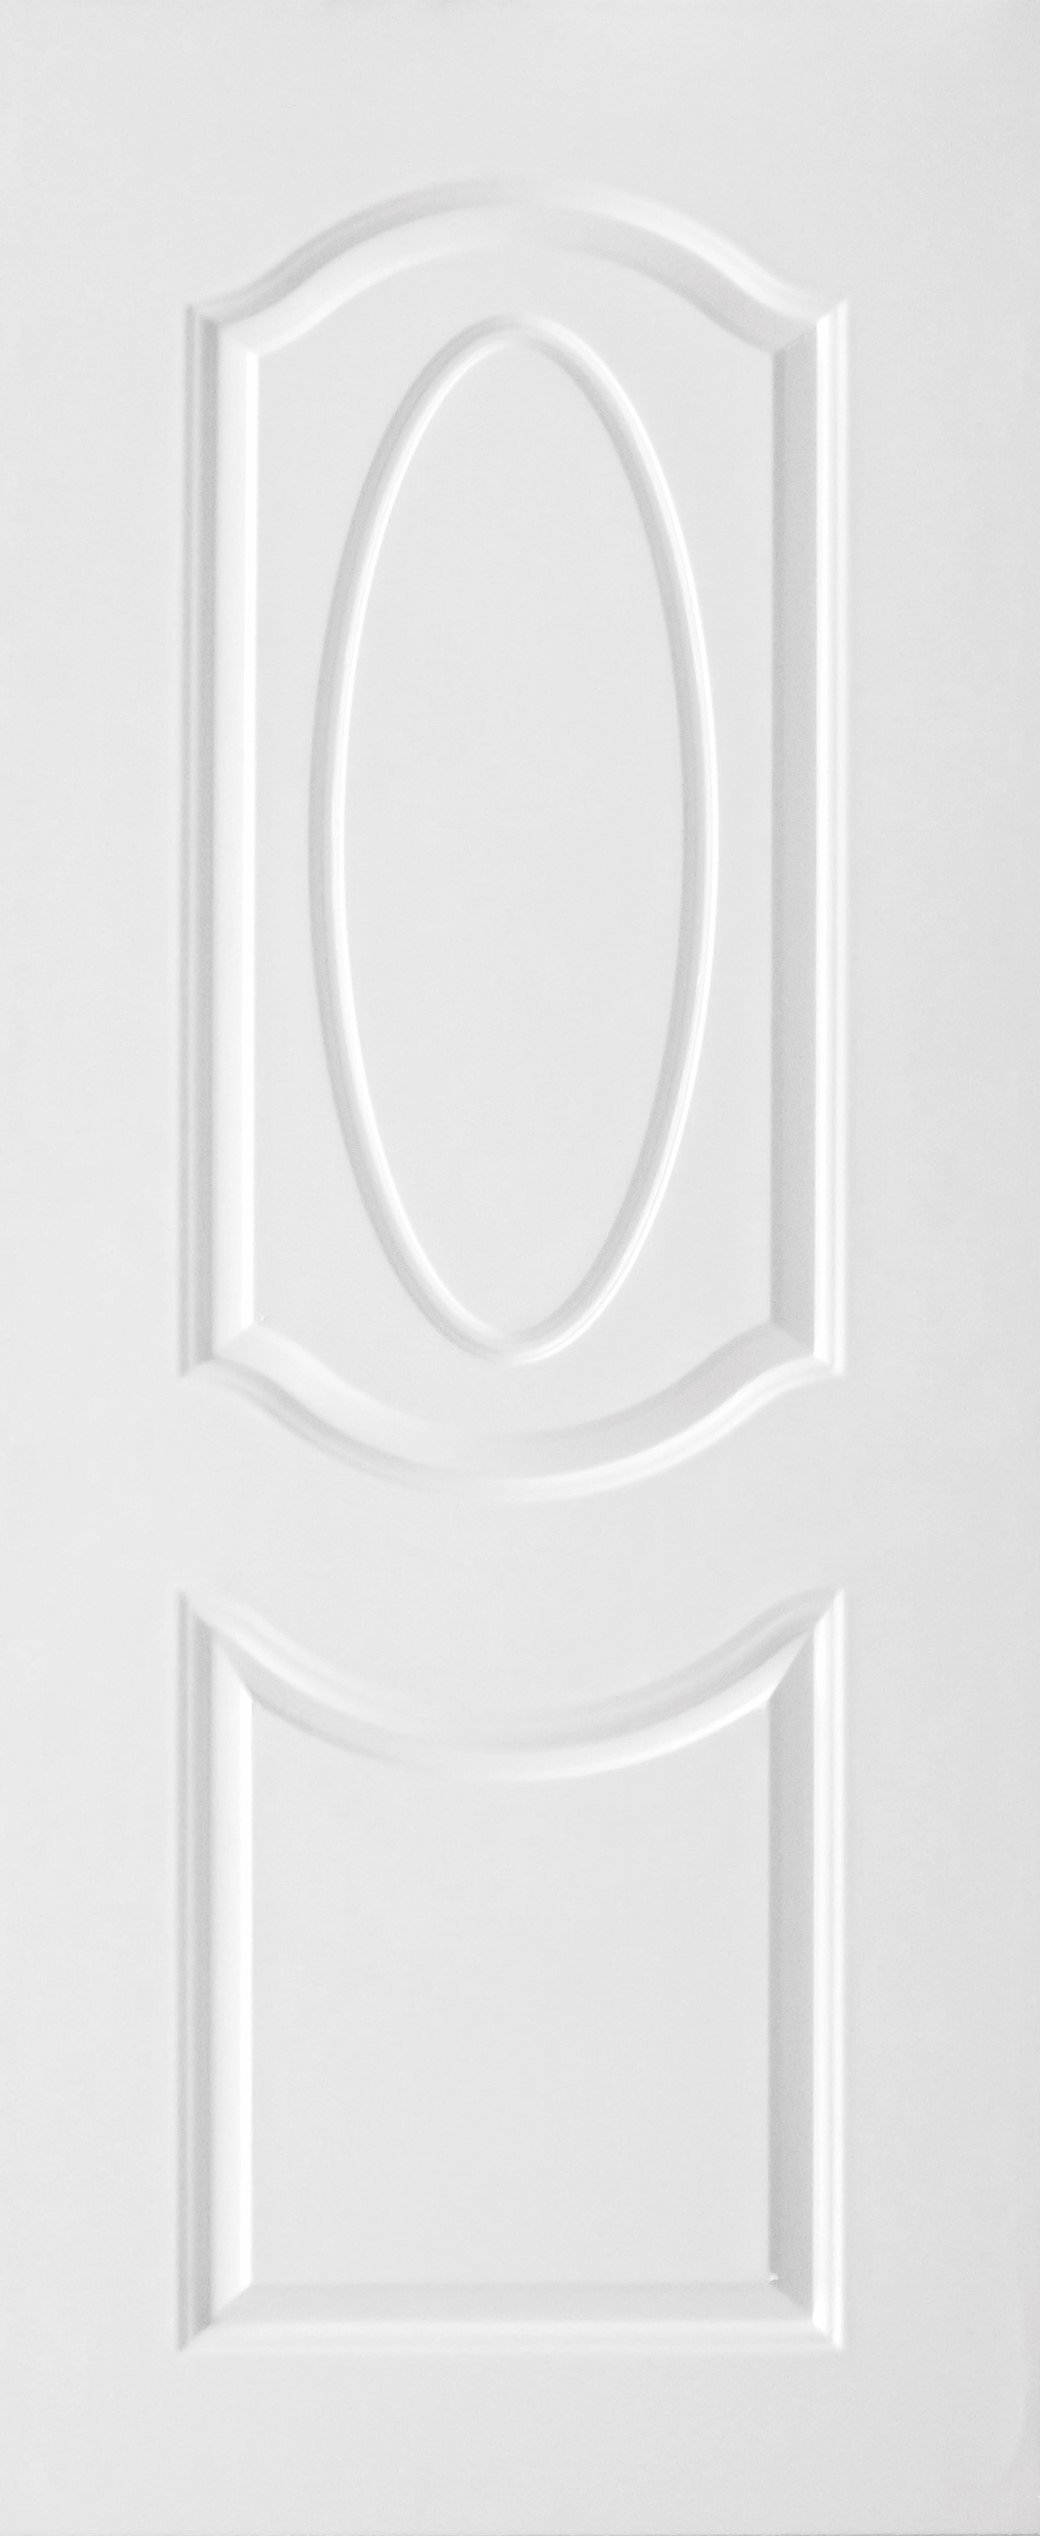 ประตูUPVC ผิวหน้าลายไม้ สีขาว บานลูกฟัก 2 ช่องโค้ง